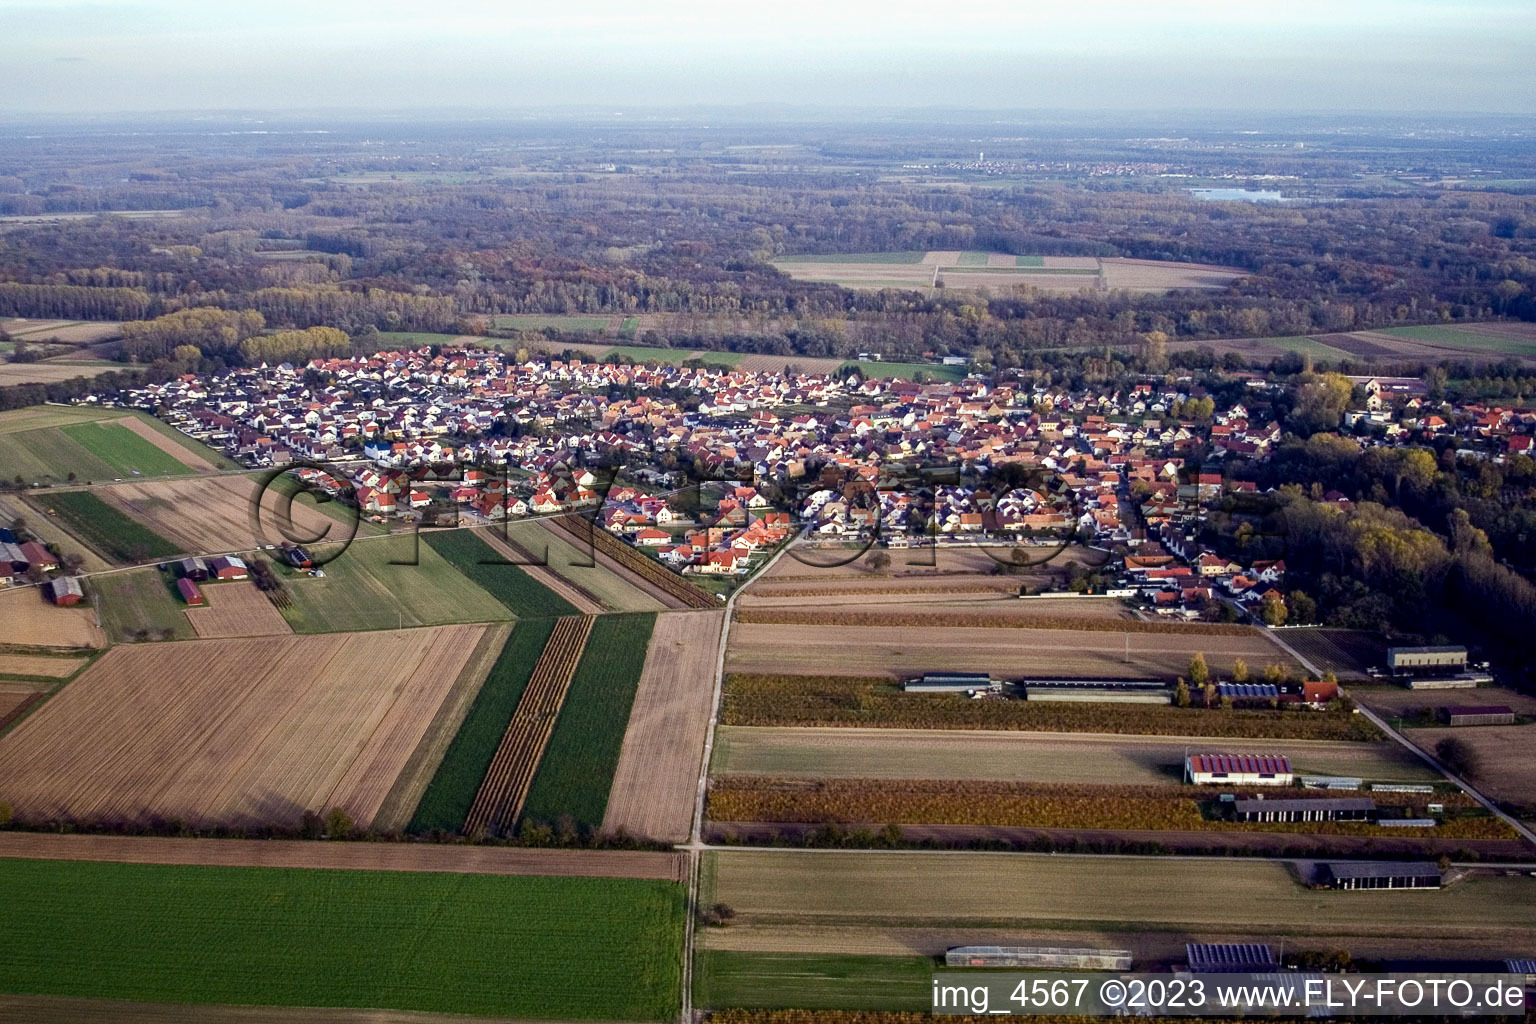 Vue aérienne de De l'ouest à Hördt dans le département Rhénanie-Palatinat, Allemagne